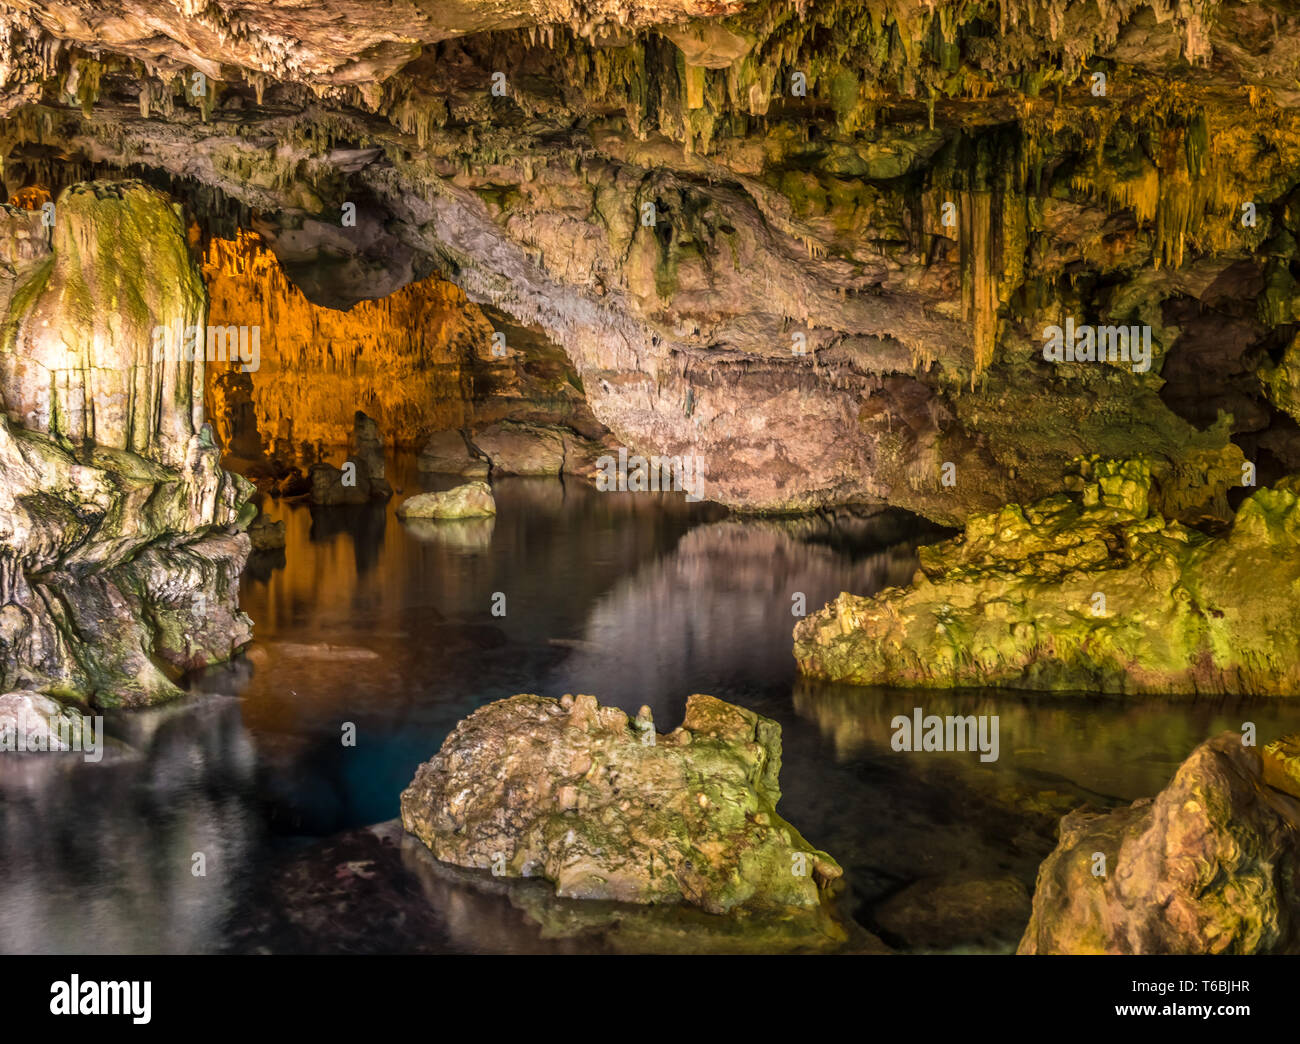 Neptuns Grotte (Grotta di Nettuno) Eine natürliche Tropfsteinhöhle in der Nähe von Alghero, Sardinien, Italien. Zugänglich, wenn die Gewässer ruhig sind durch eine steile Treppe Stockfoto